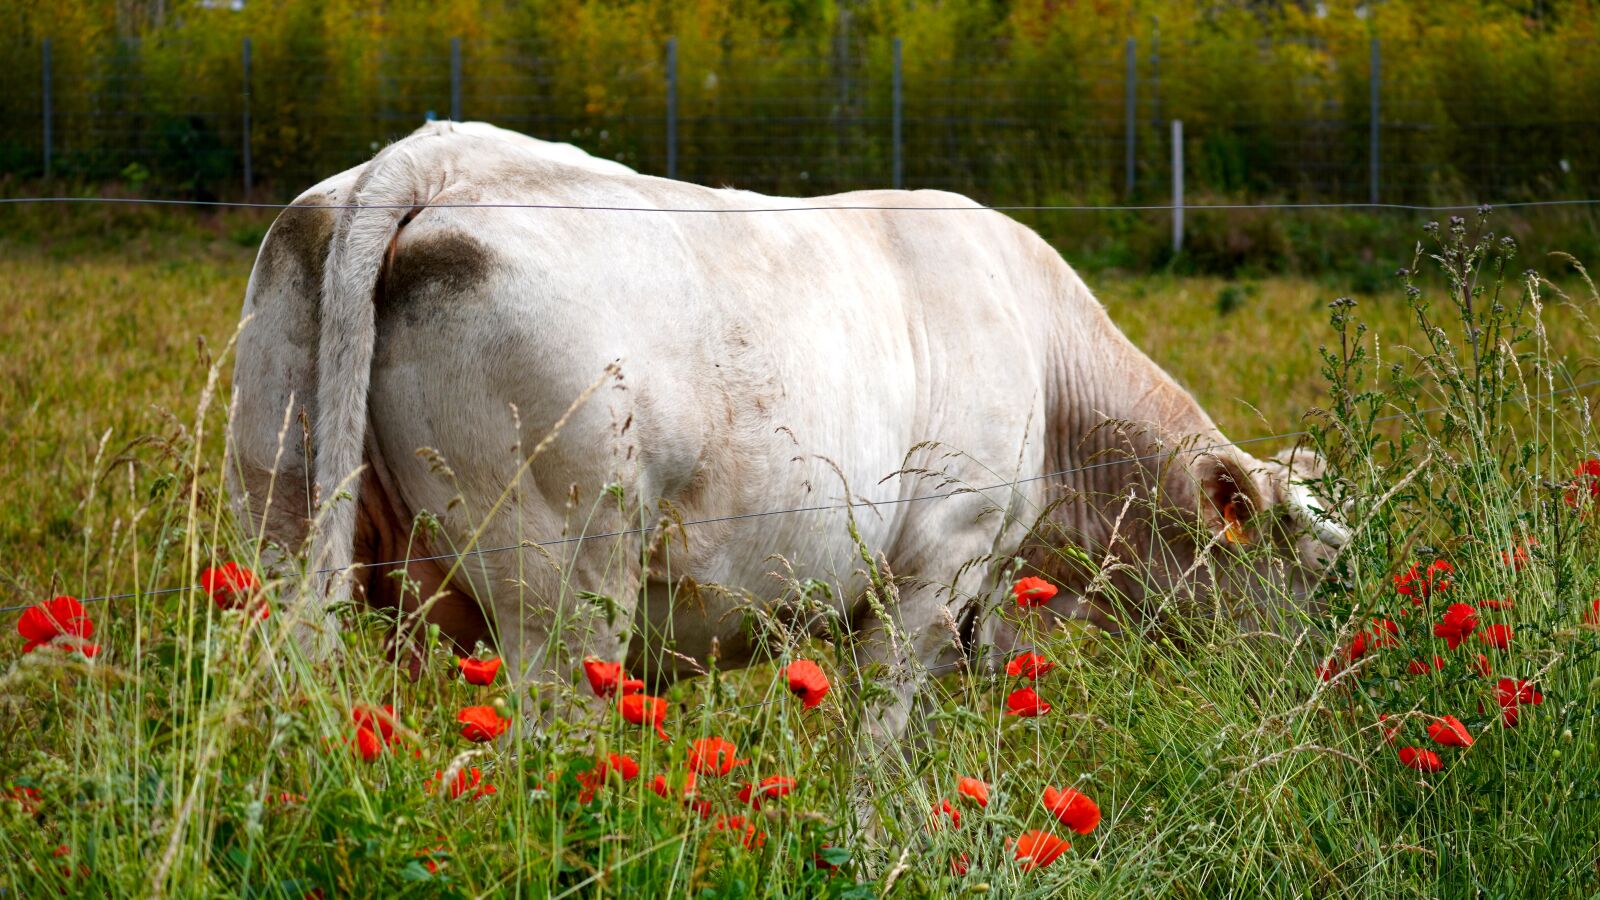 Sony a6400 sample photo. Cow, animal, farm photography